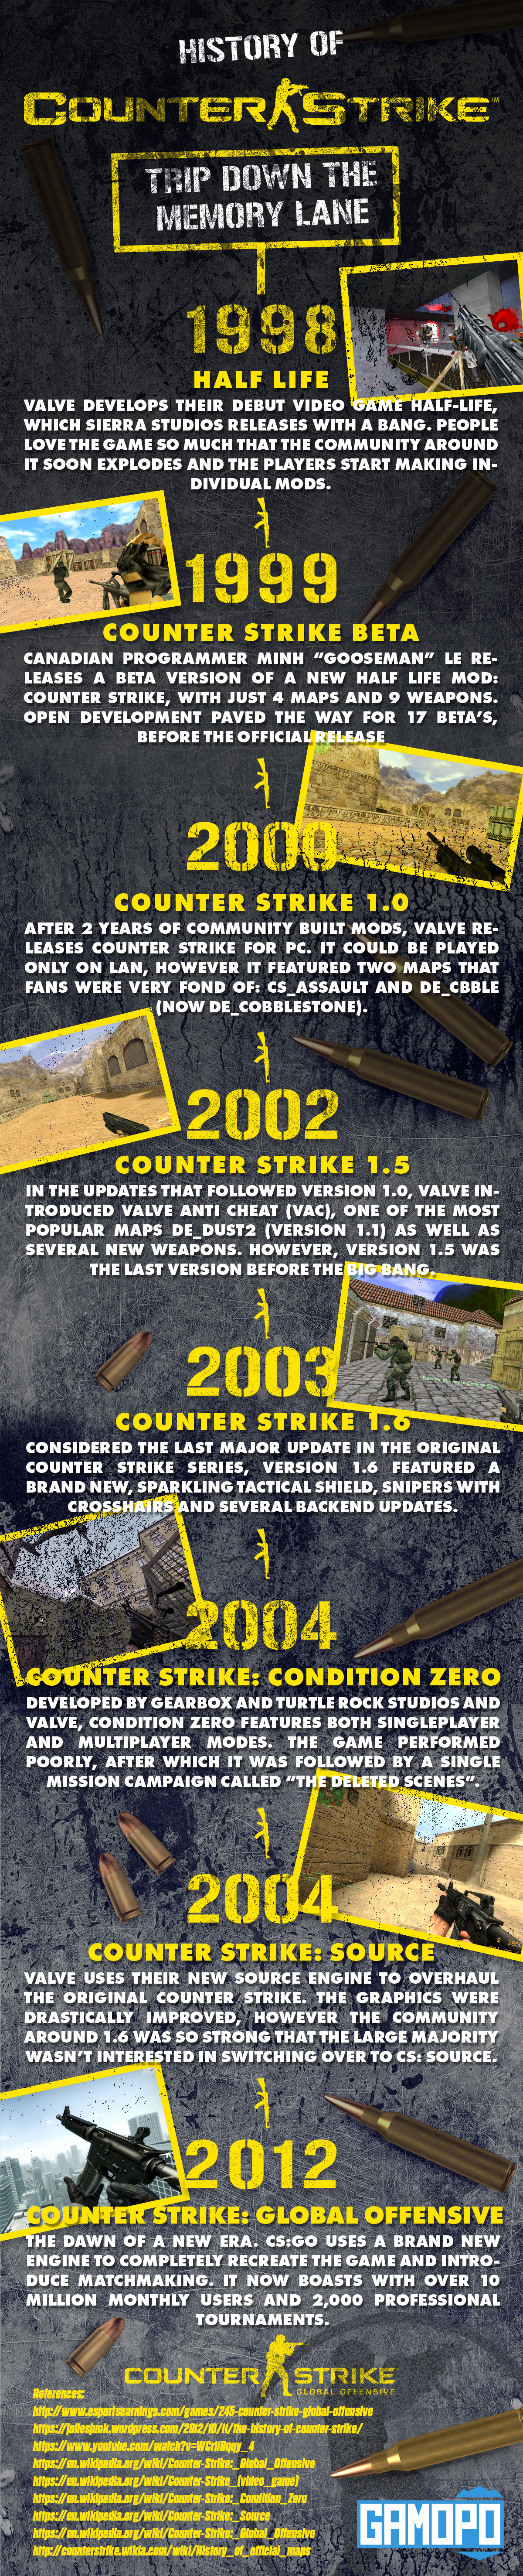 Povijest Counter Strikea - Infografika